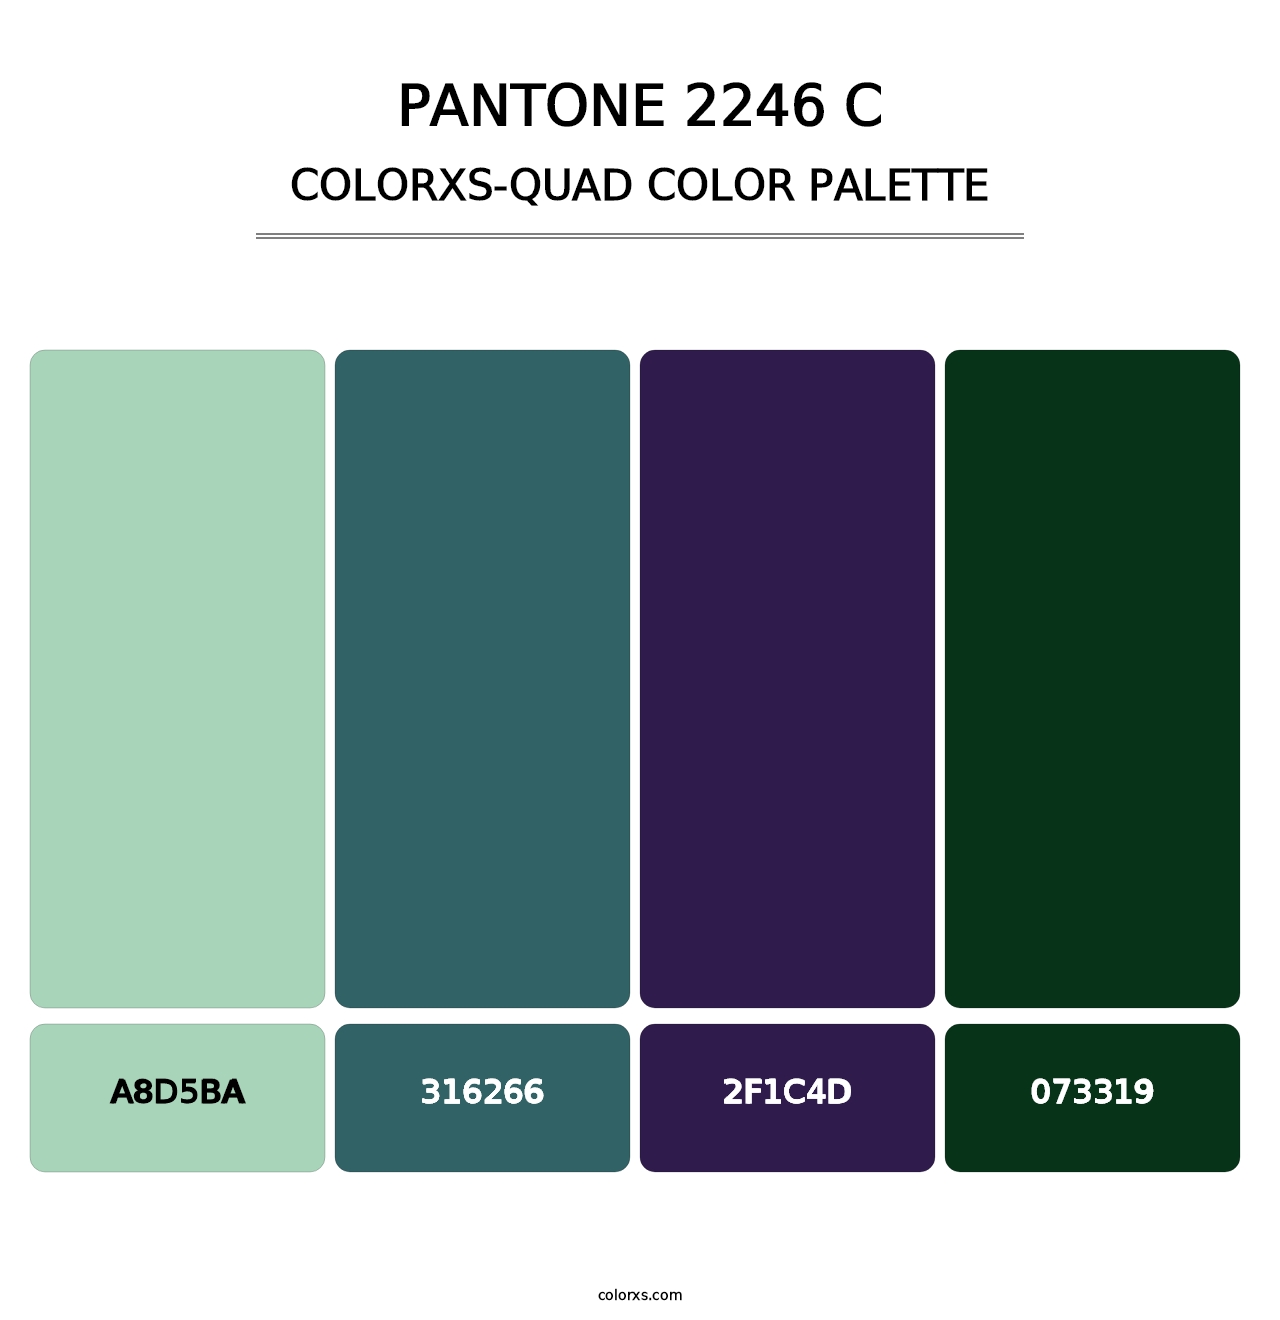 PANTONE 2246 C - Colorxs Quad Palette